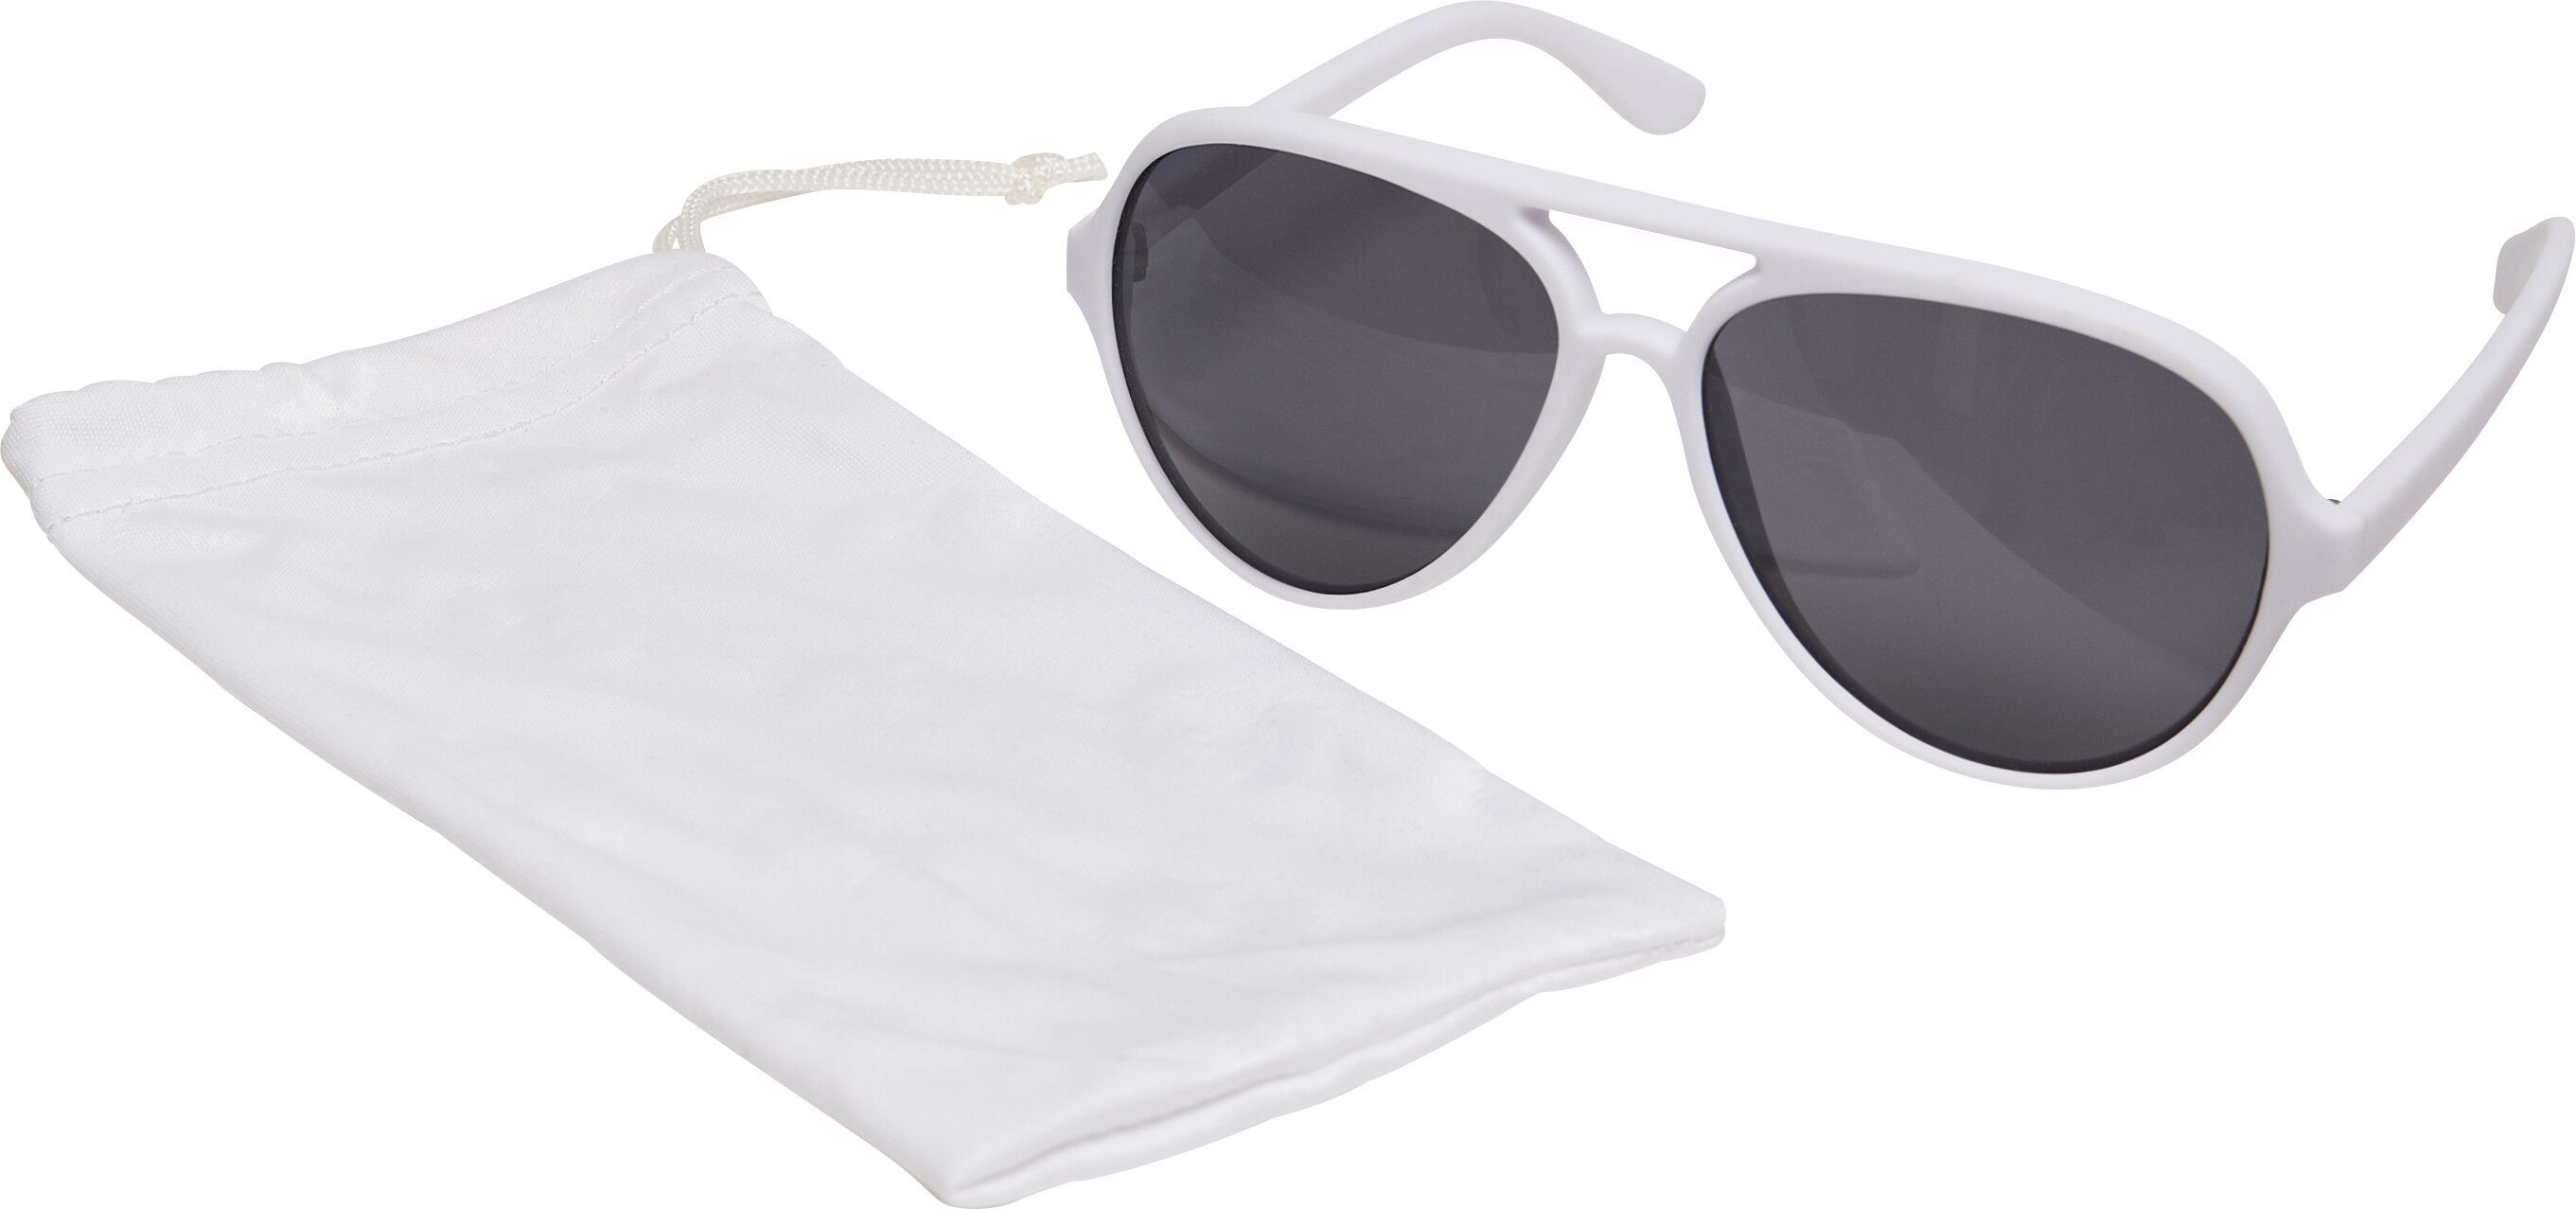 March Sunglasses Sonnenbrille MSTRDS Accessoires white